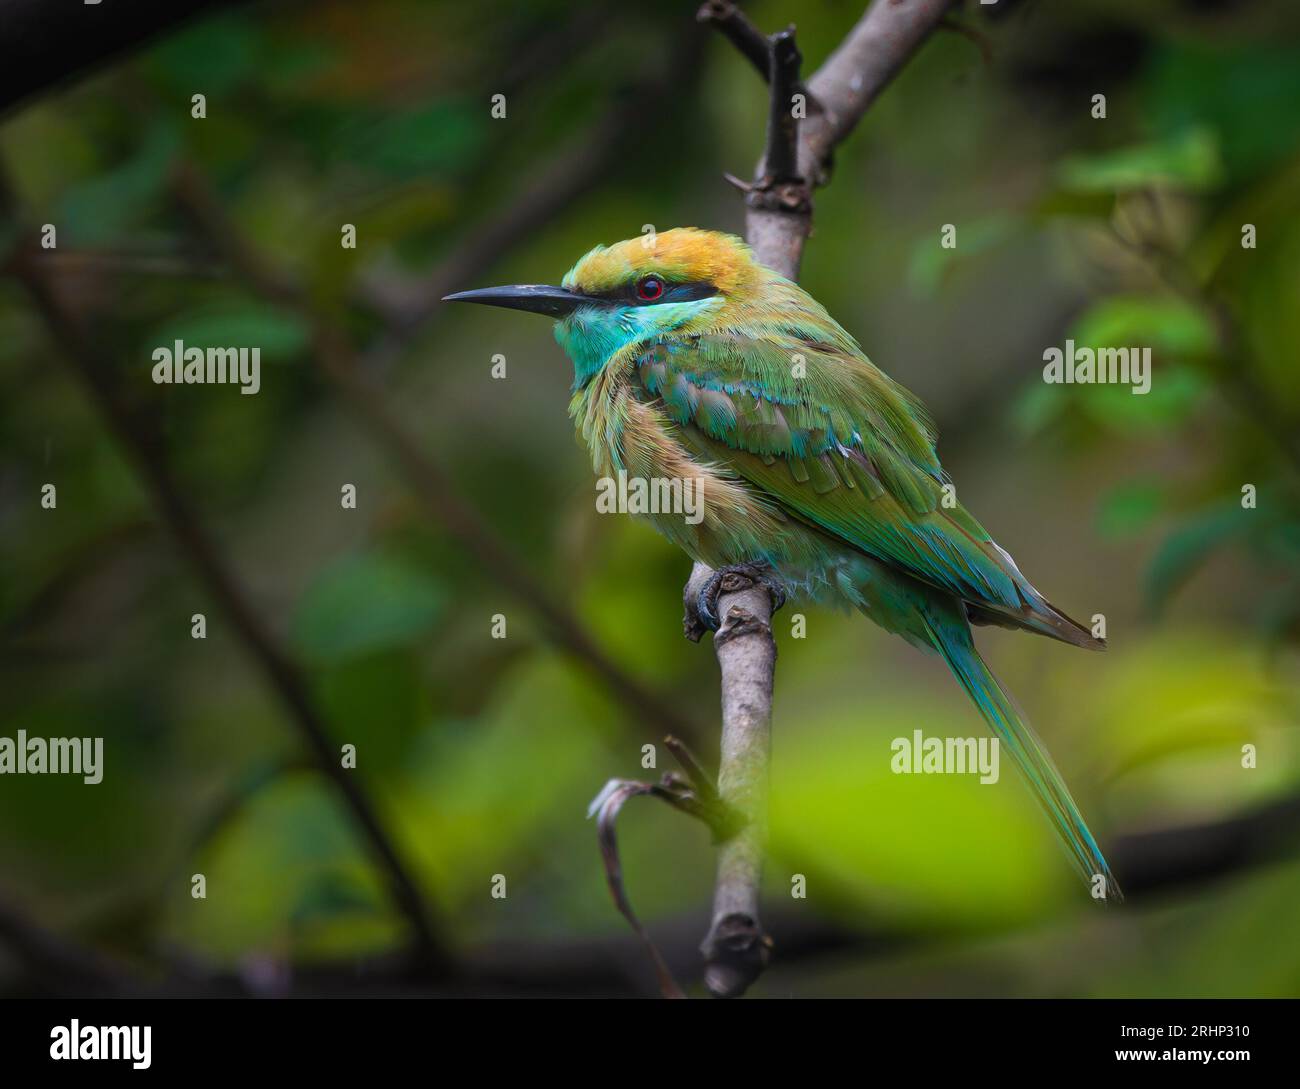 Questa immagine HD dettagliata è la migliore fotografia per la copertina di una rivista per uccelli o come foto di riferimento Foto Stock